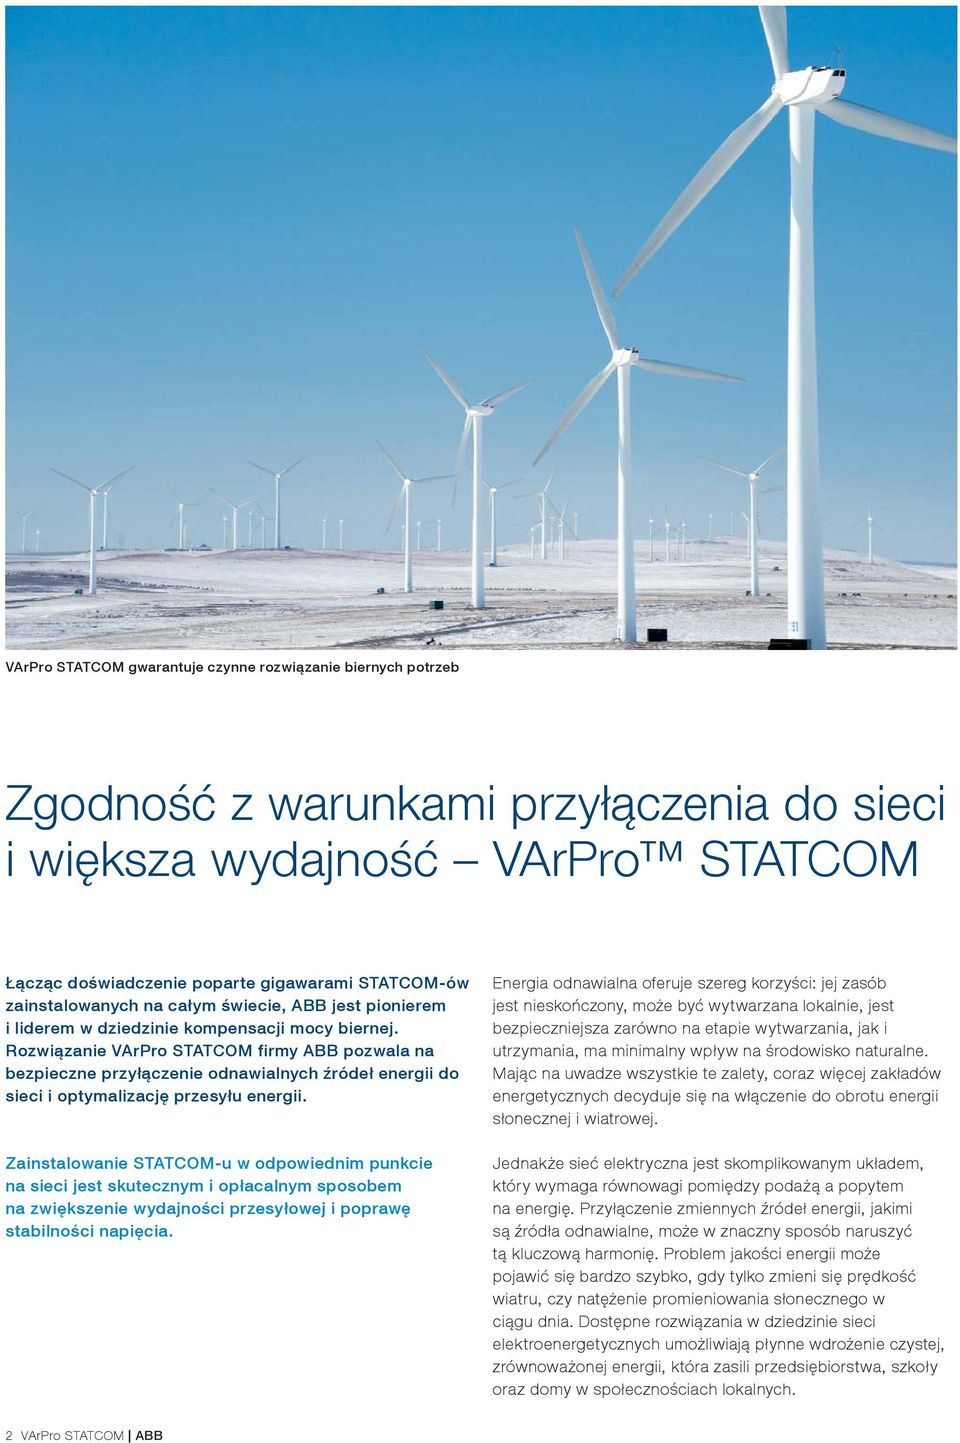 Rozwiązanie VArPro STATCOM firmy ABB pozwala na bezpieczne przyłączenie odnawialnych źródeł energii do sieci i optymalizację przesyłu energii.